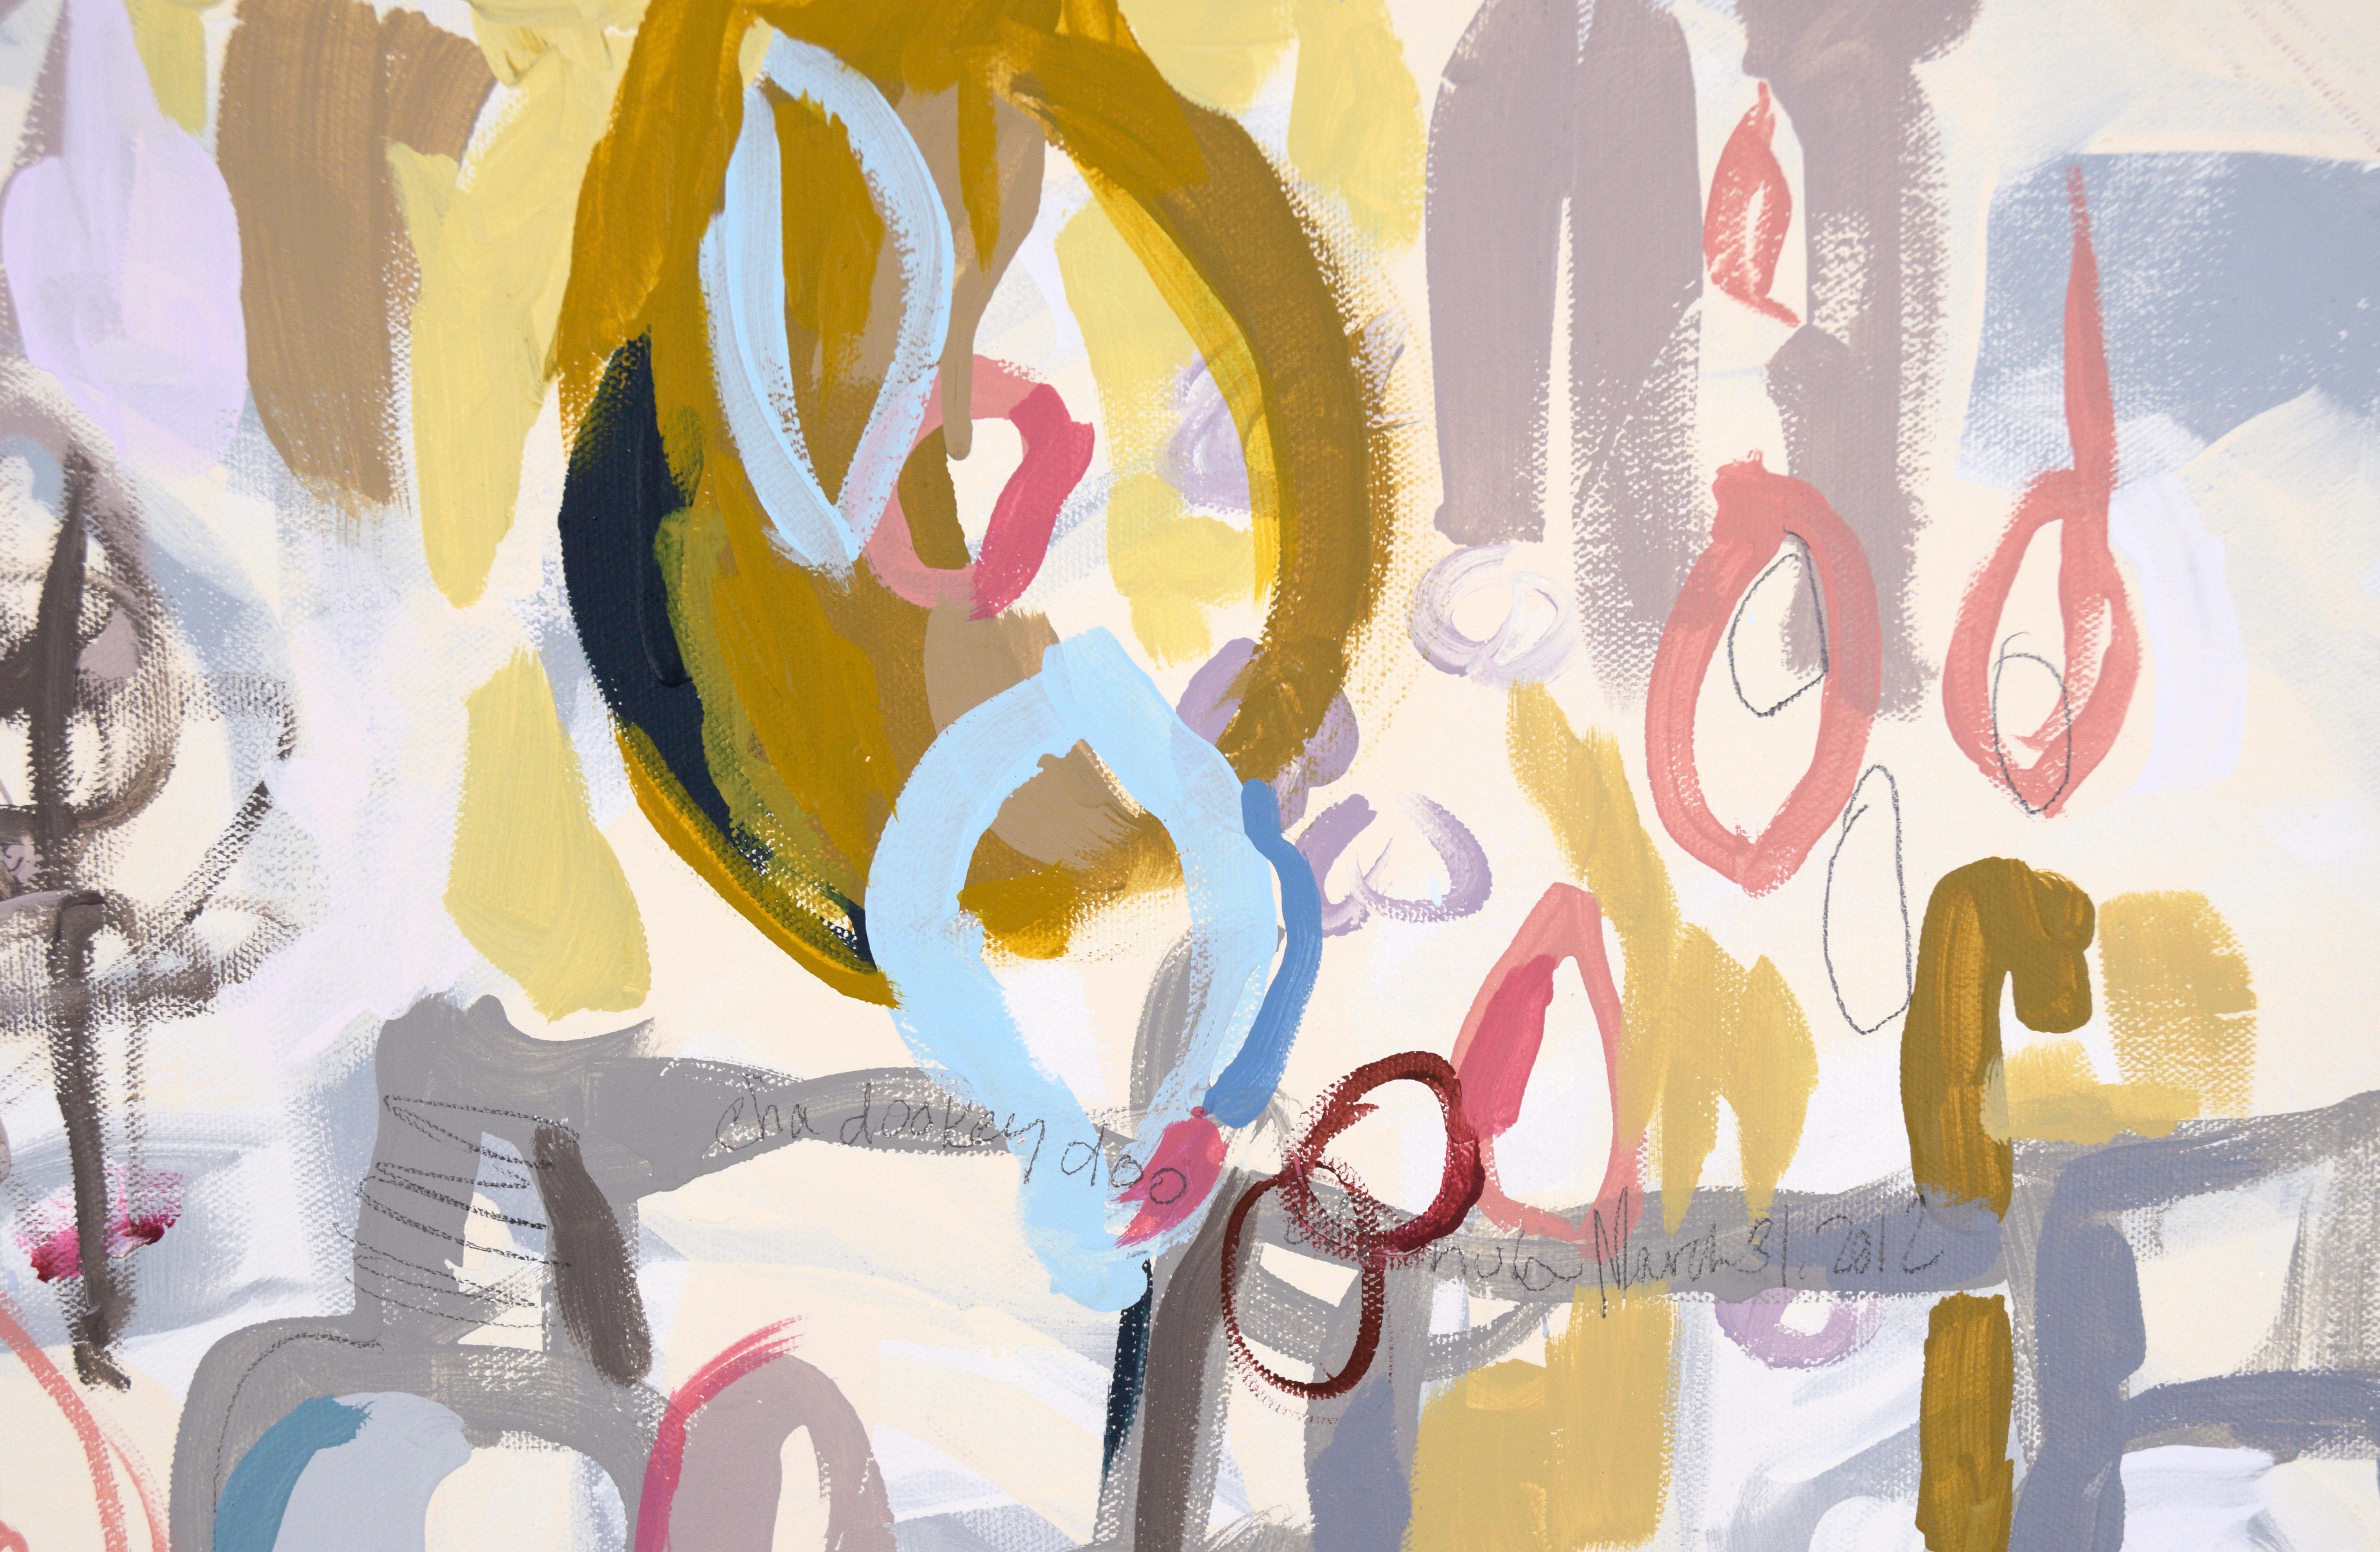 Abstrakt-expressionistische Komposition „Cha Dooky Doo“ aus Acryl auf Leinwand (Abstrakter Expressionismus), Painting, von Nancy B. Westfall